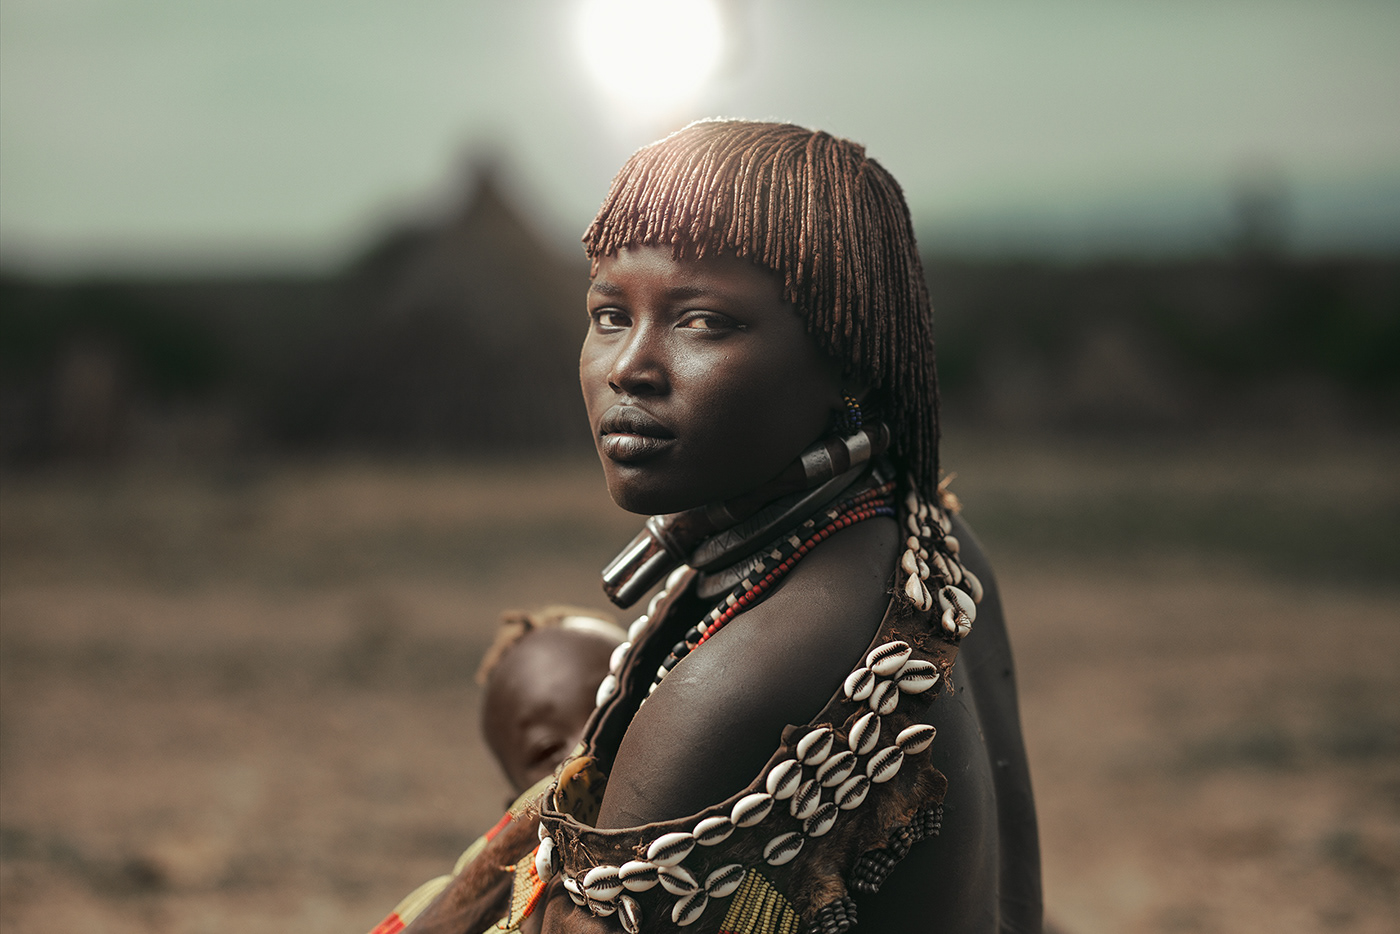 Etiopia-非洲部落人